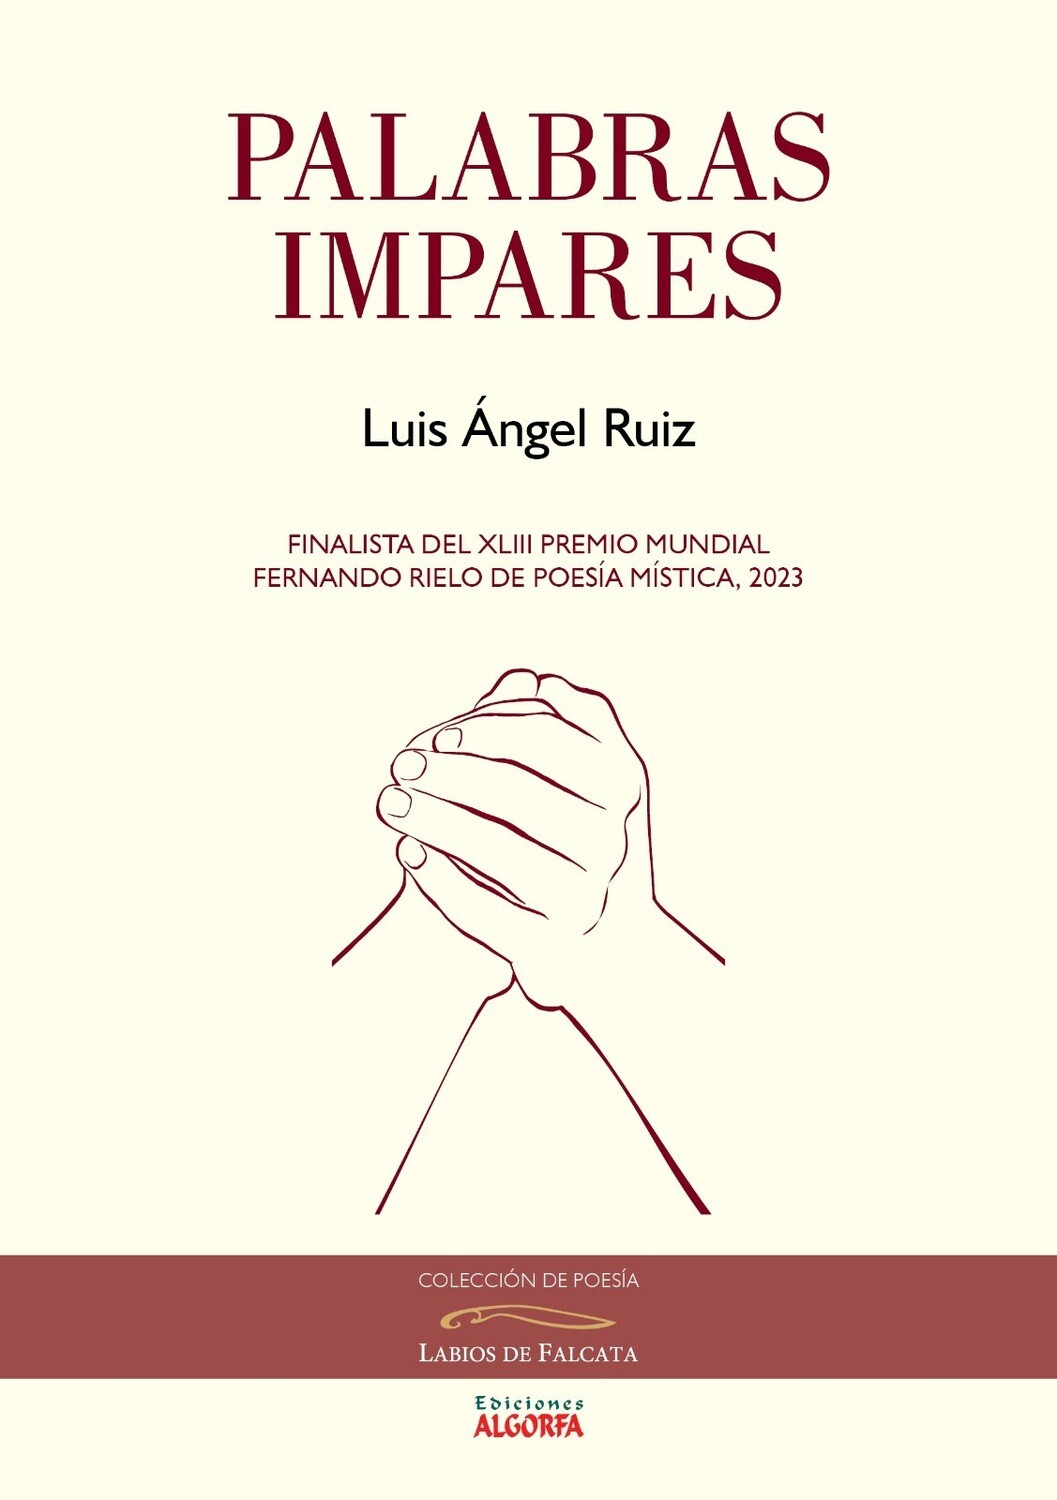 PALABRAS IMPARES. Luis Ángel Ruiz Herrero